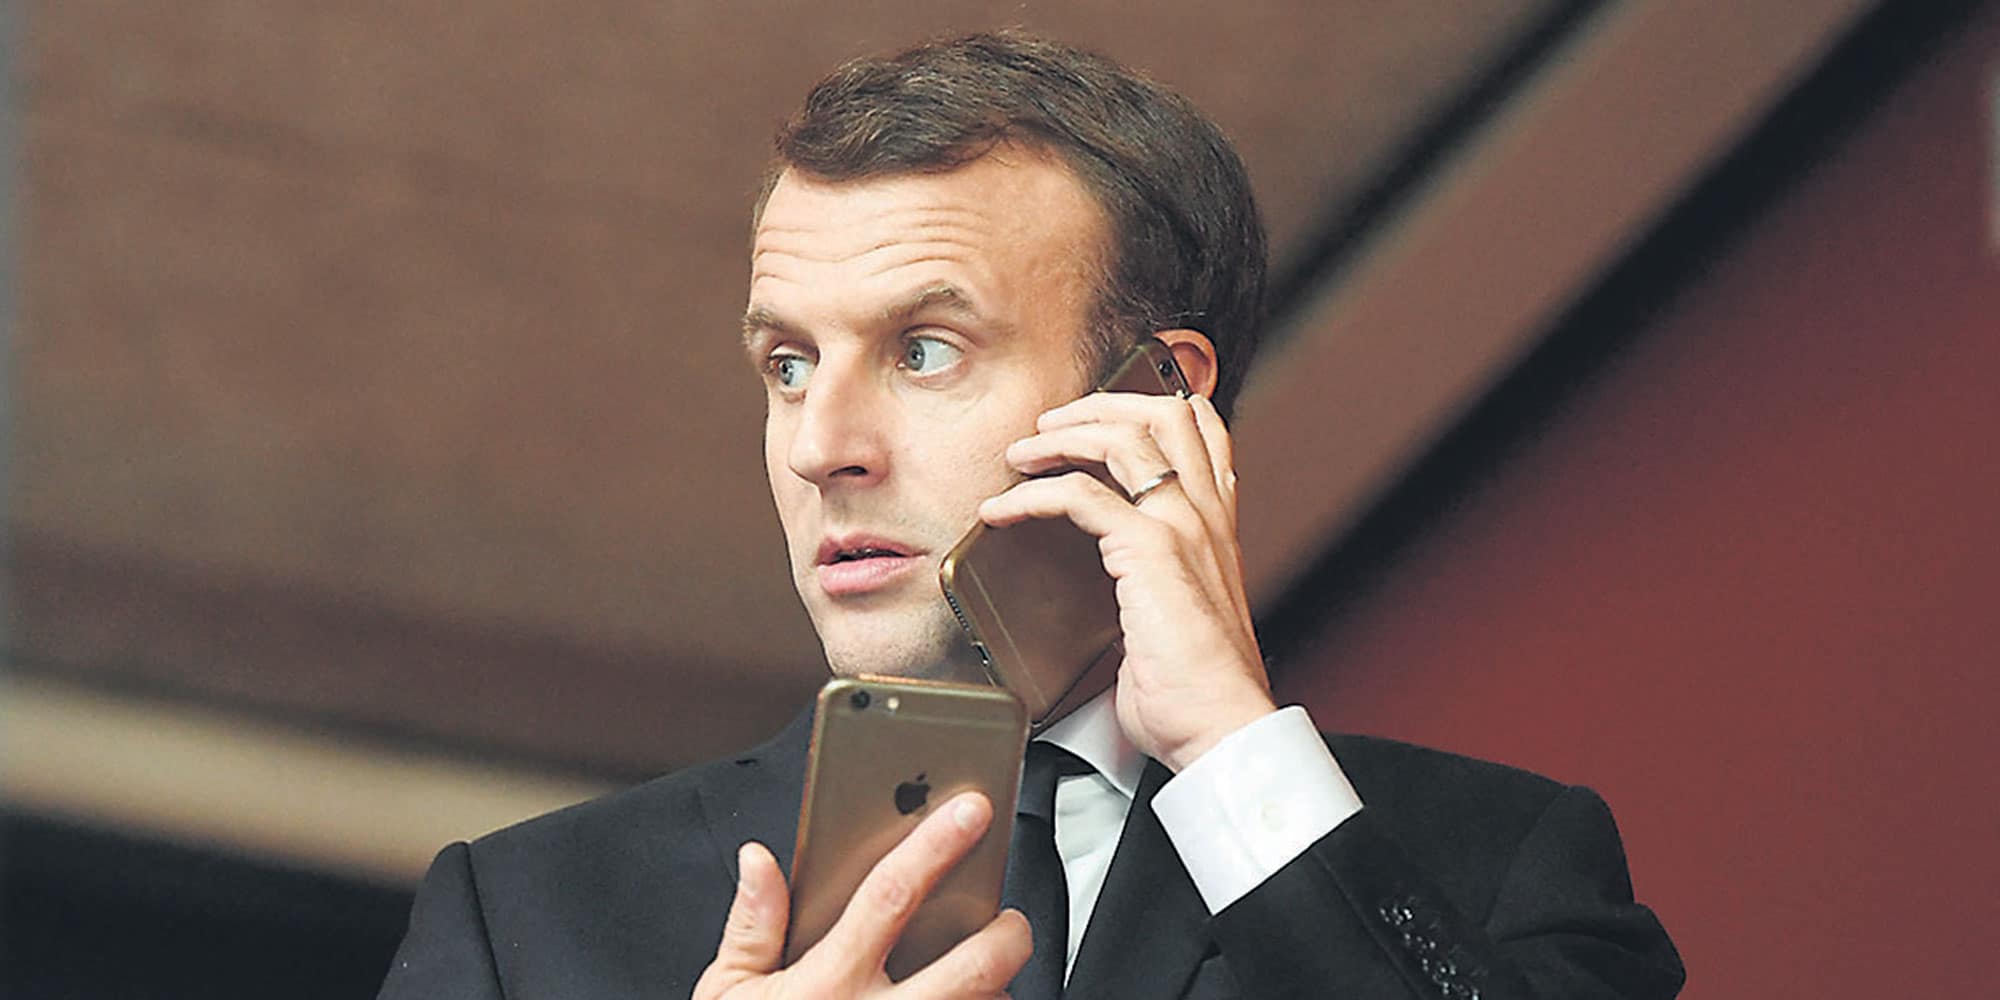 الرئاسة الفرنسية اعلنت ان ماكرون غير هاتفه الذكي تفادياً لأي اختراق محتمل watanserb.com